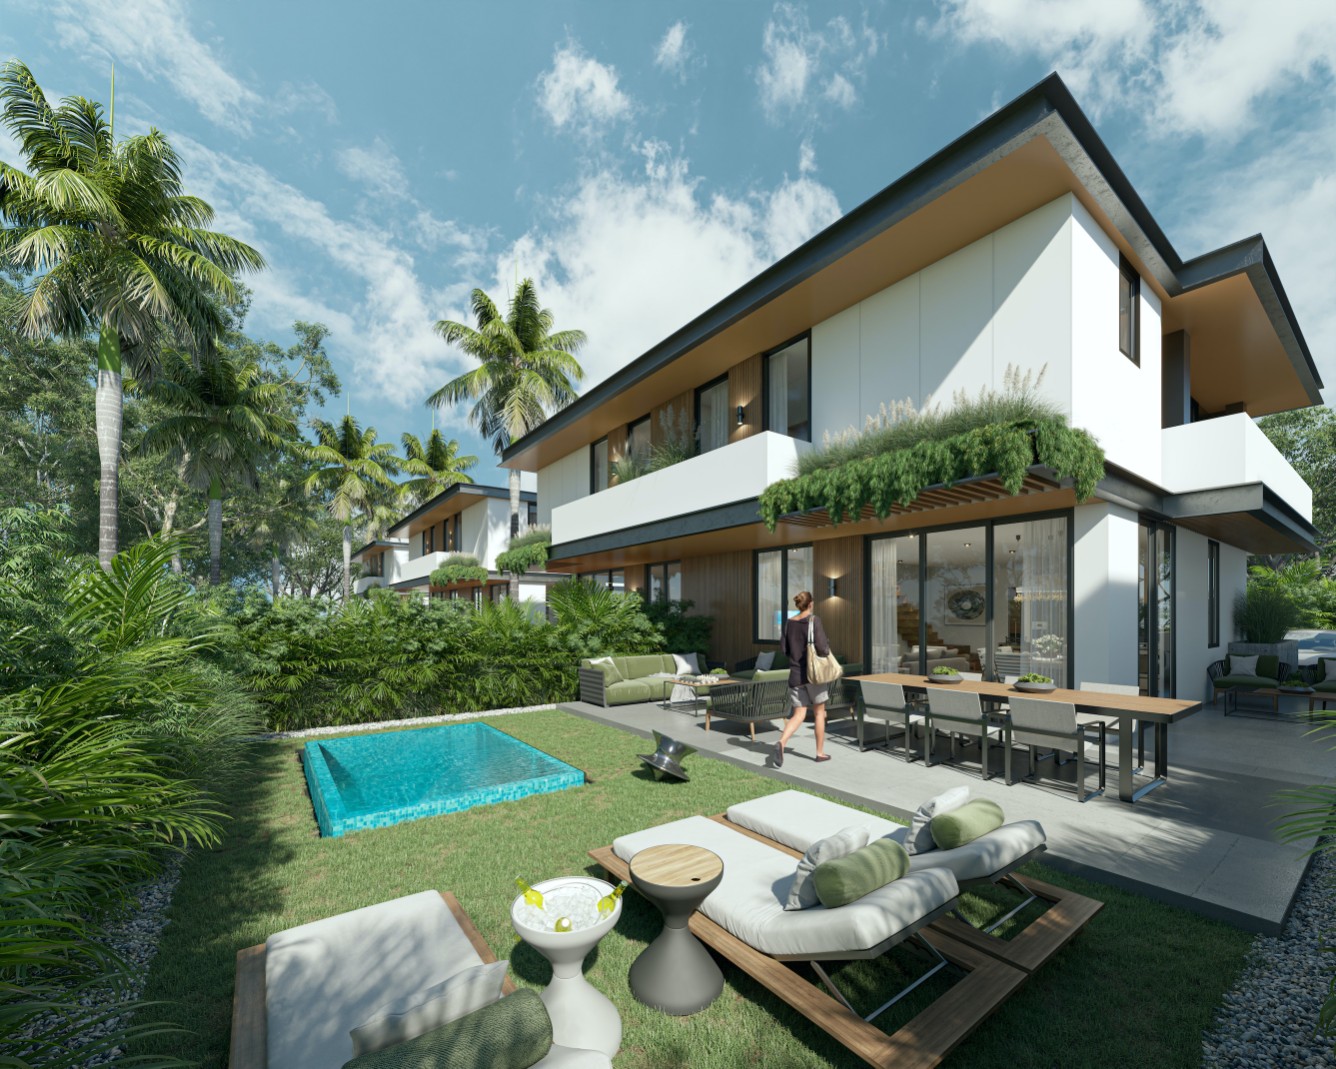 Villas en venta en Punta Cana con Campo de golf y playa artificial. 0